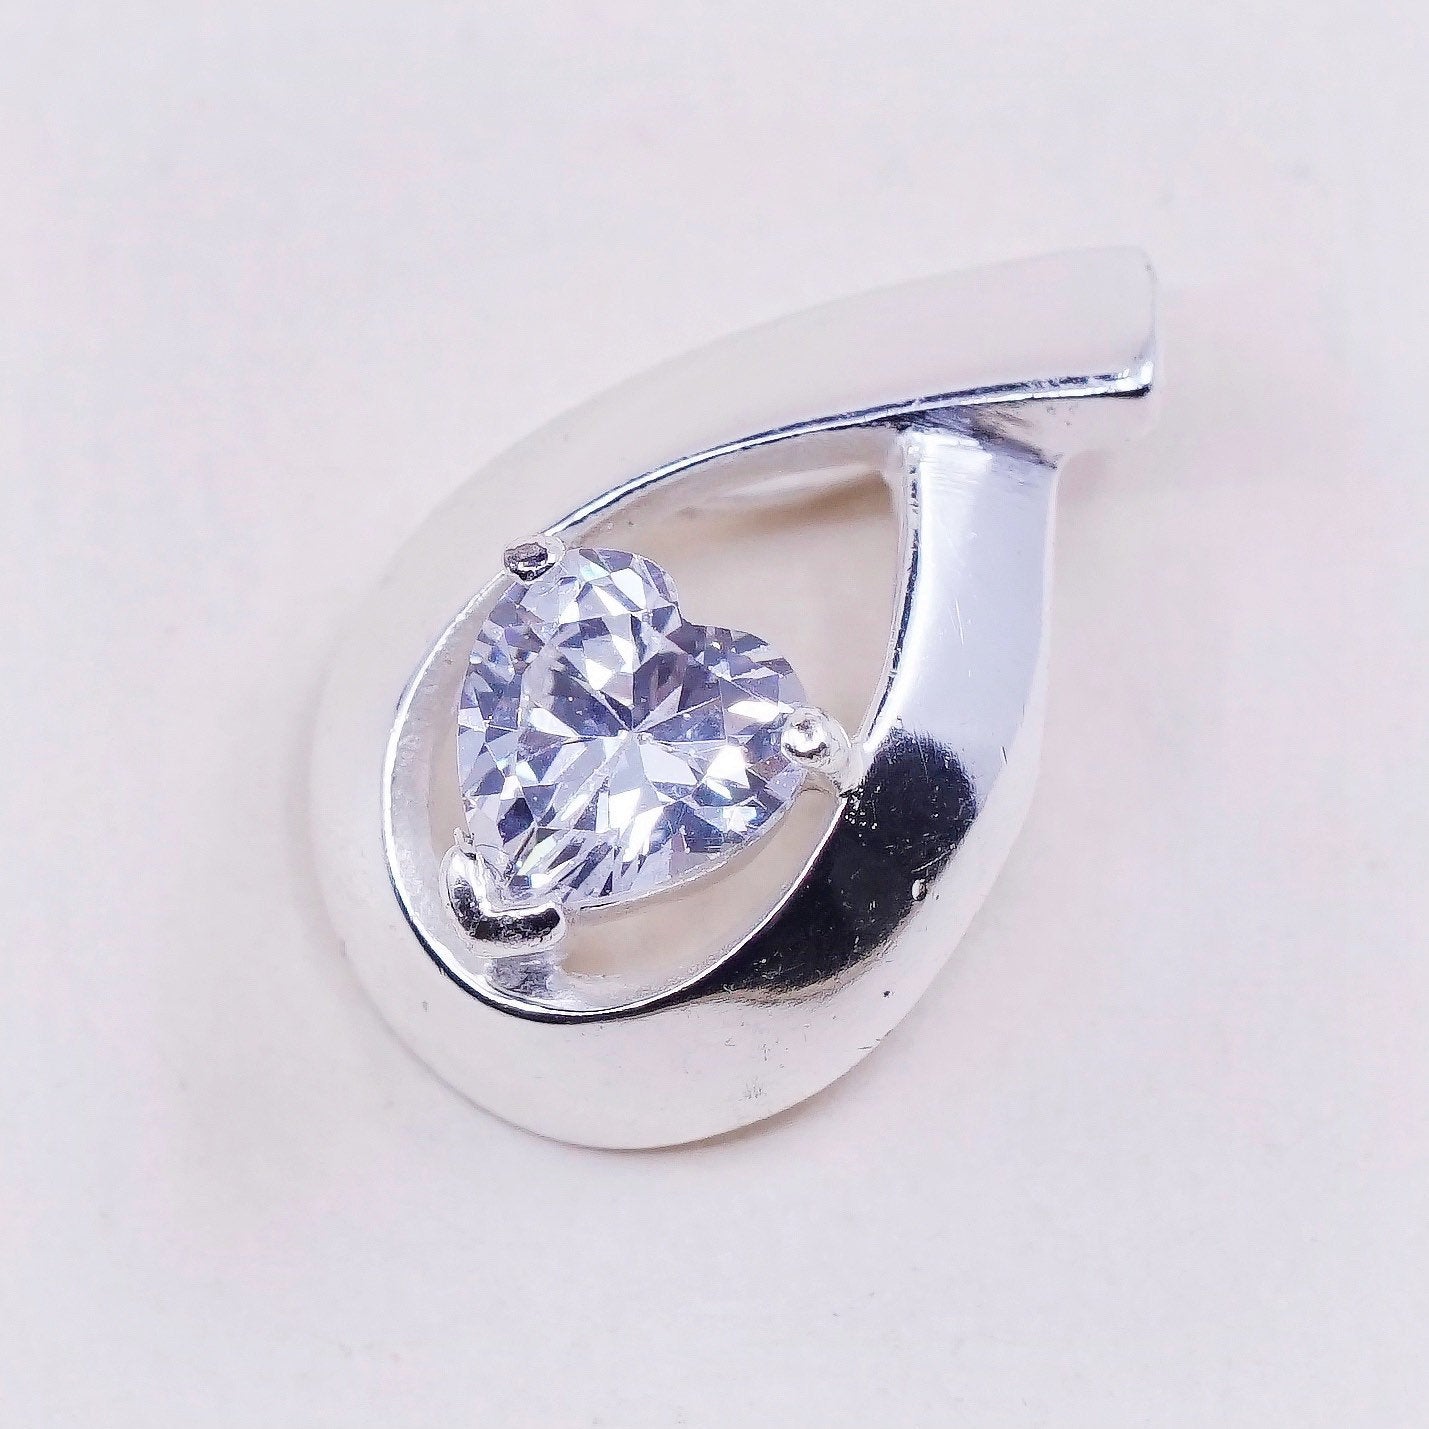 Sterling silver pendant, 925 w/ teardrop crystal “embrace dreams, follow heart”